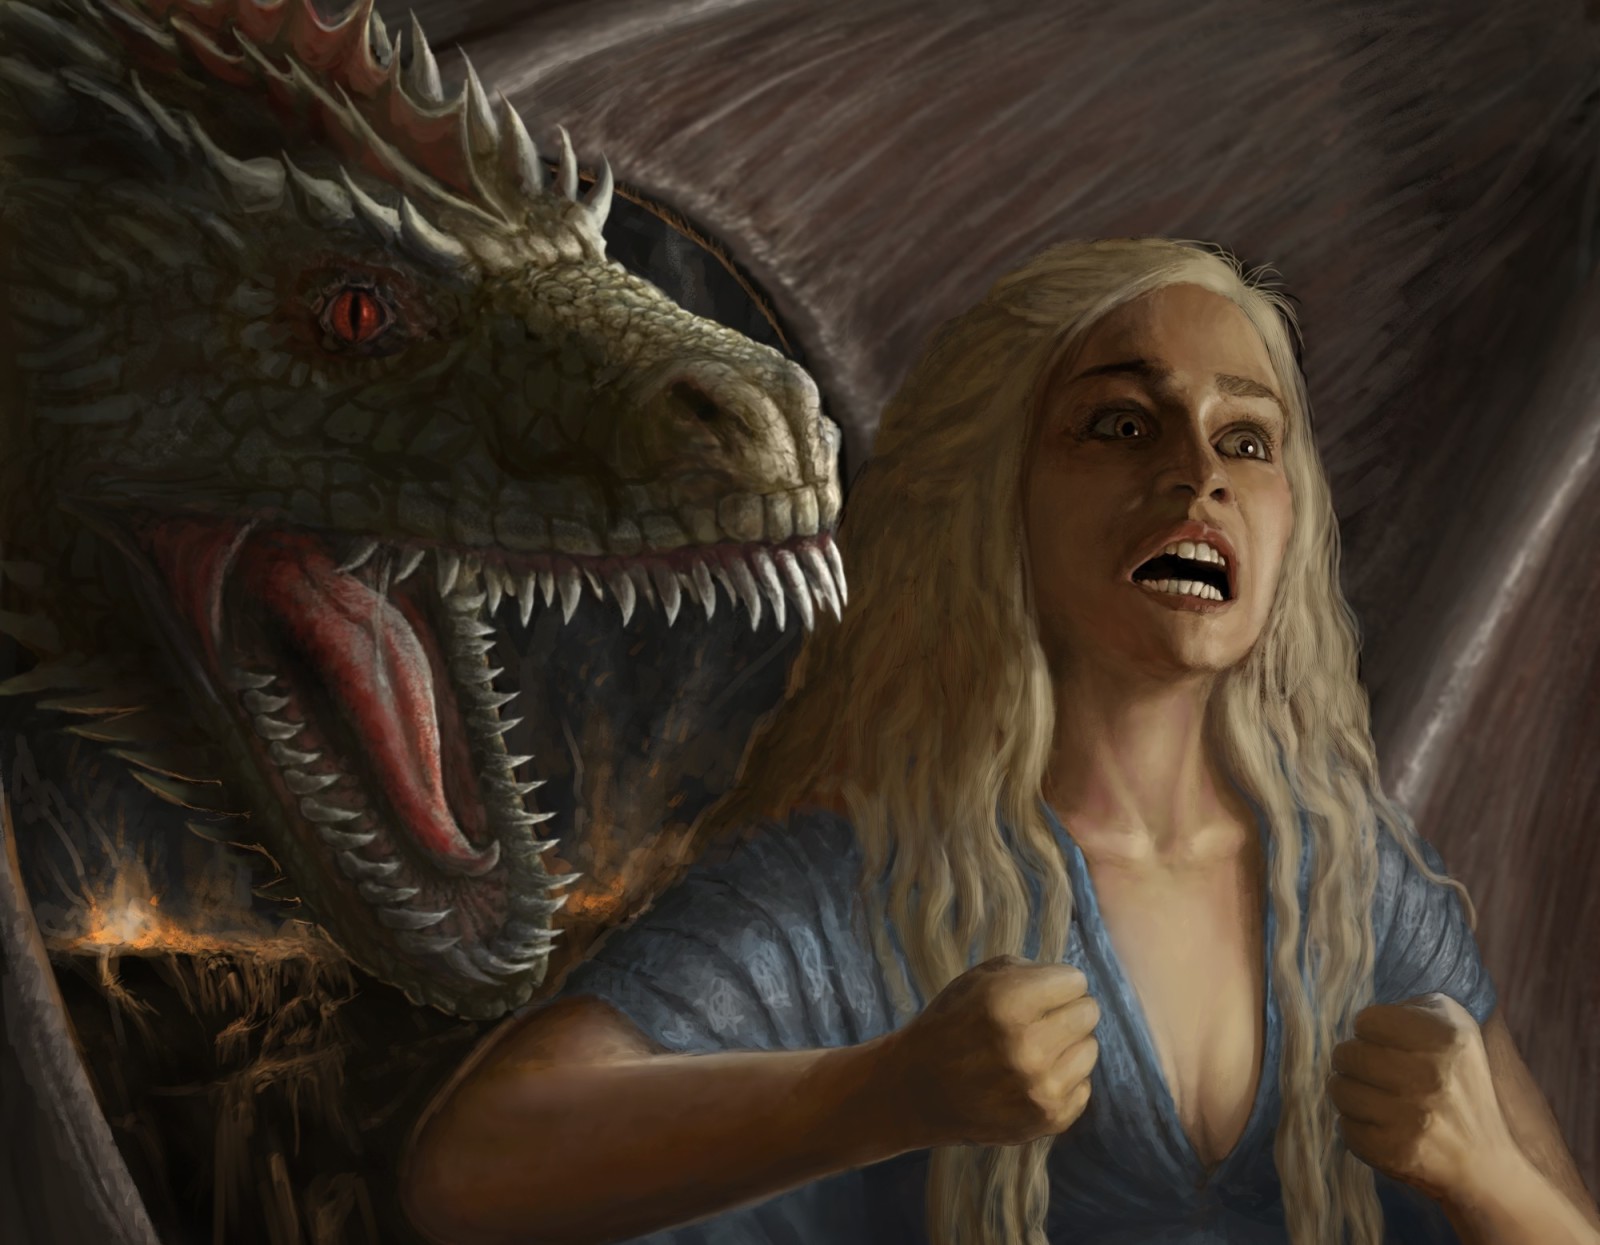 สาว, ศิลปะ, มังกร, Game Of Thrones, เพลงของ Ice and Fire, อารมณ์, ความโกรธ, Daenerys Targaryen